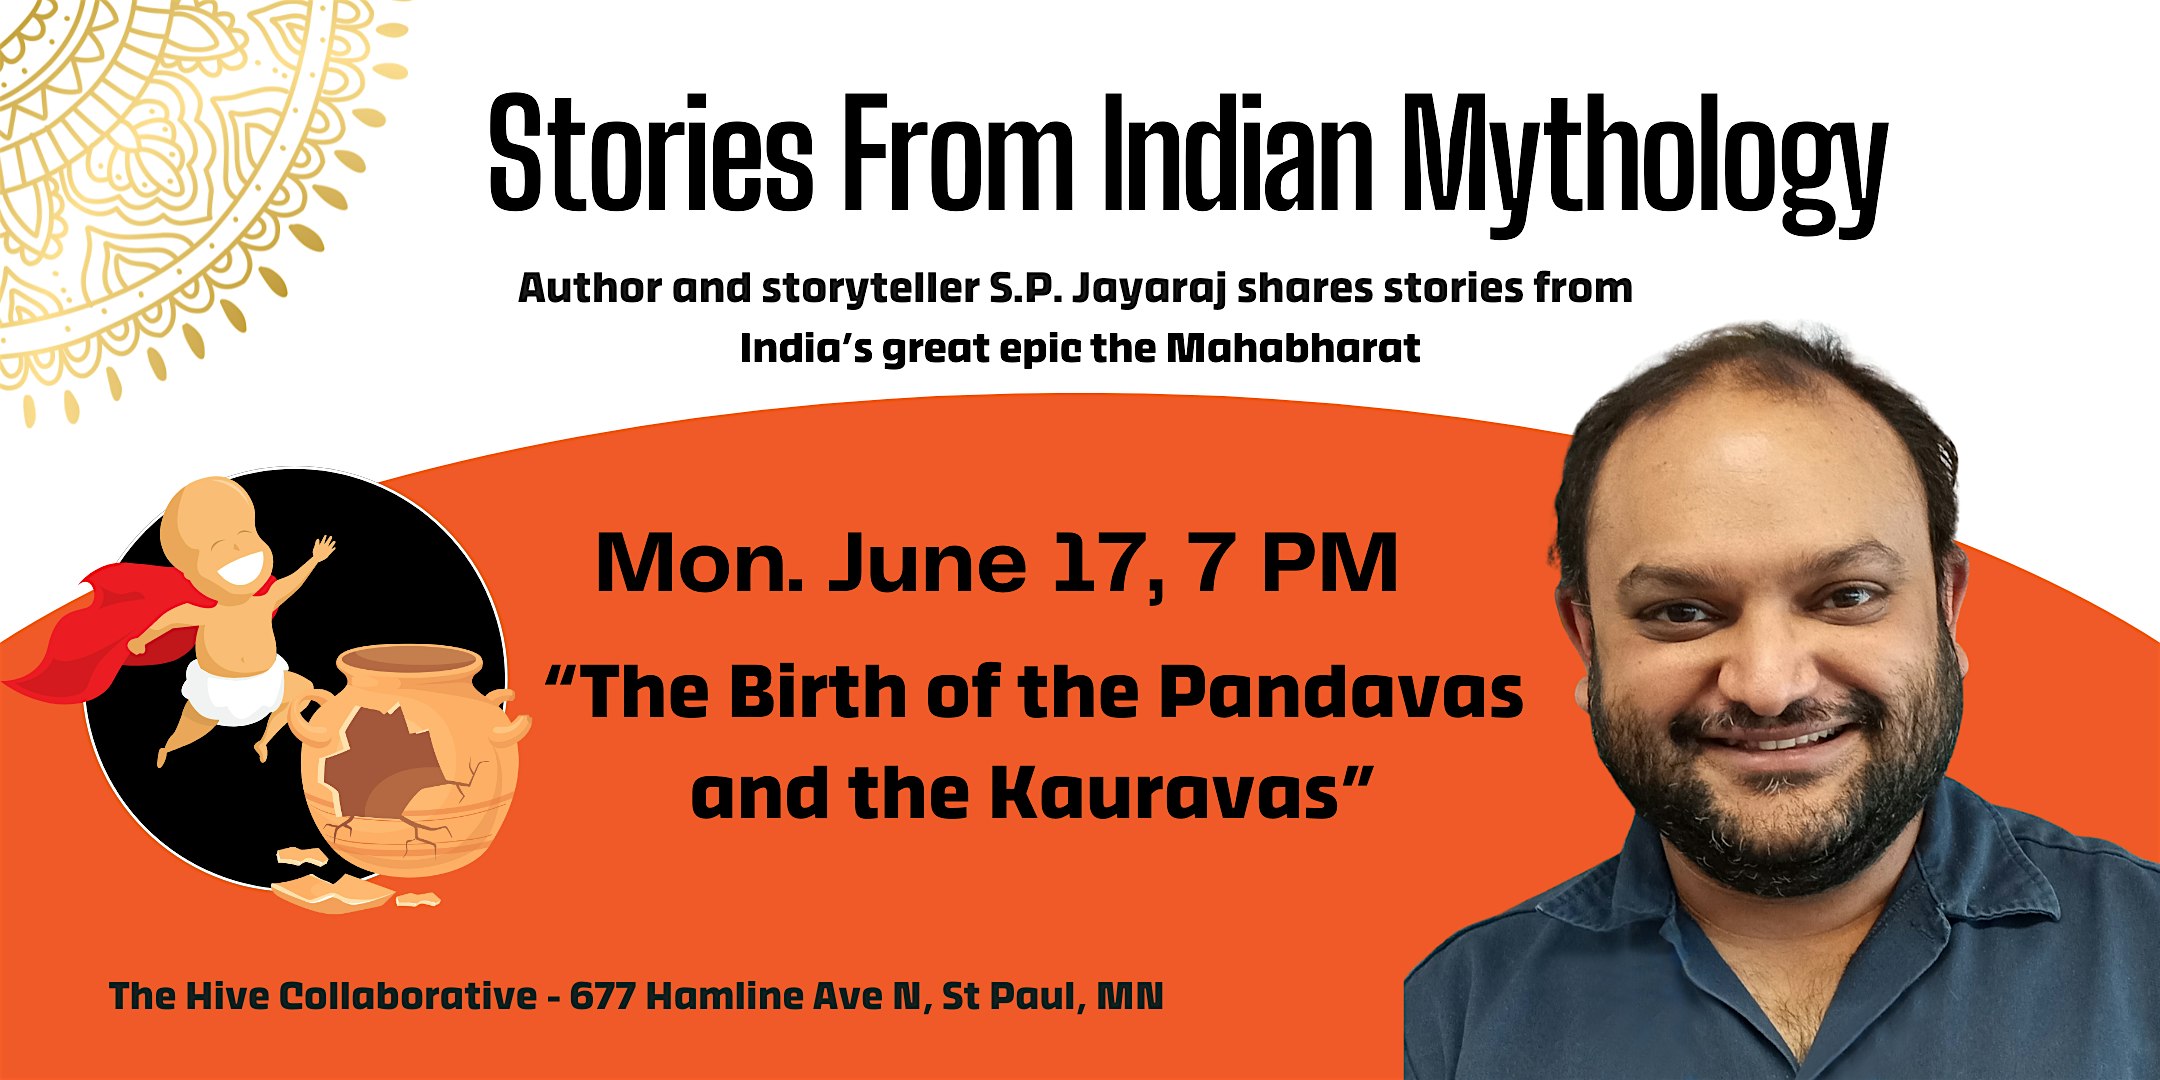 The Birth of the Pandavas and the Kauravas